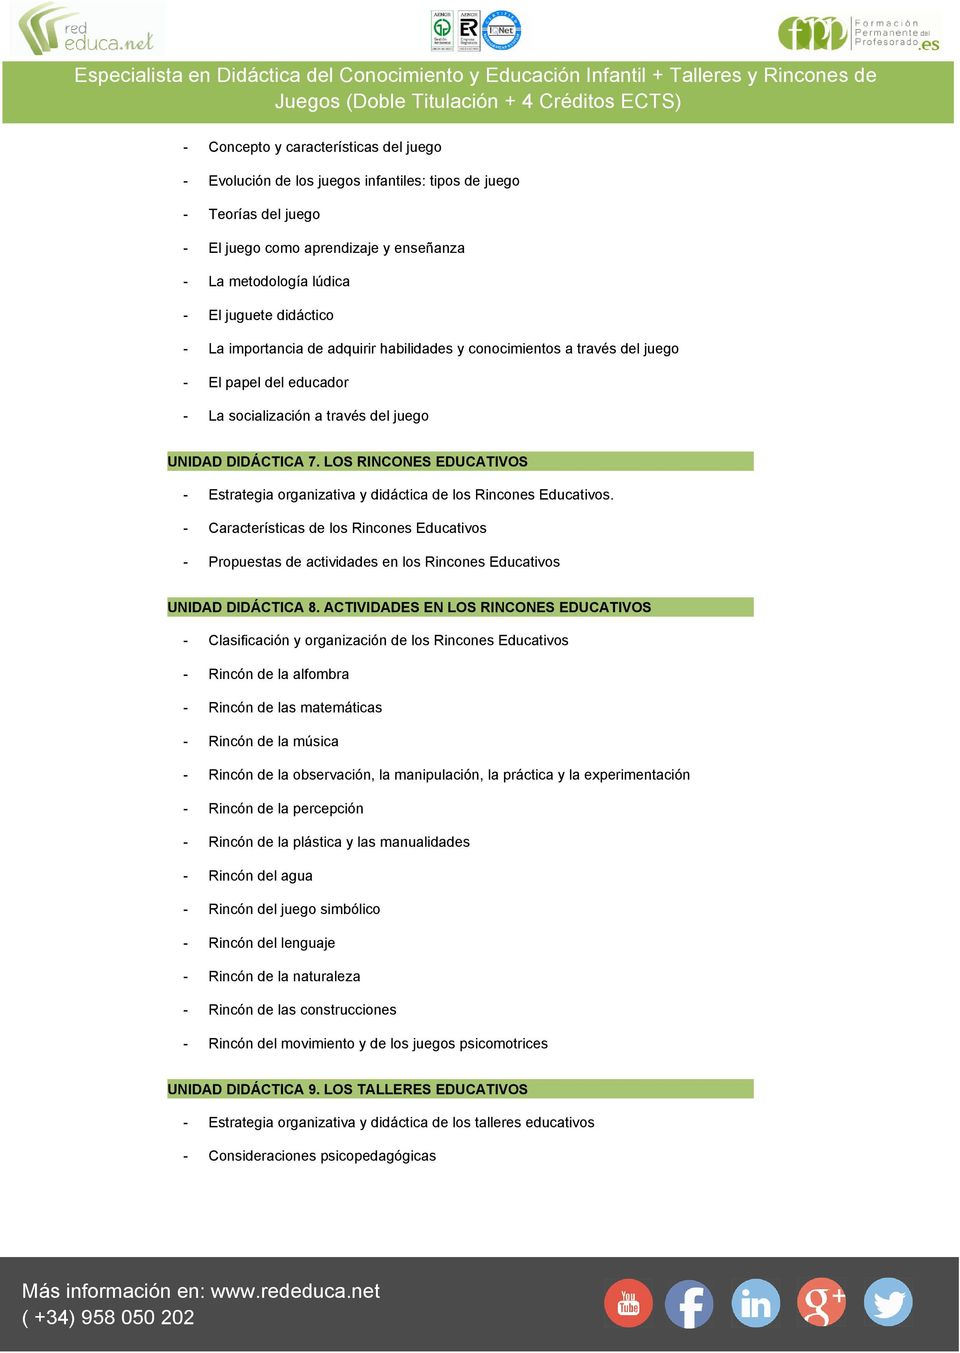 LOS RINCONES EDUCATIVOS - Estrategia organizativa y didáctica de los Rincones Educativos.